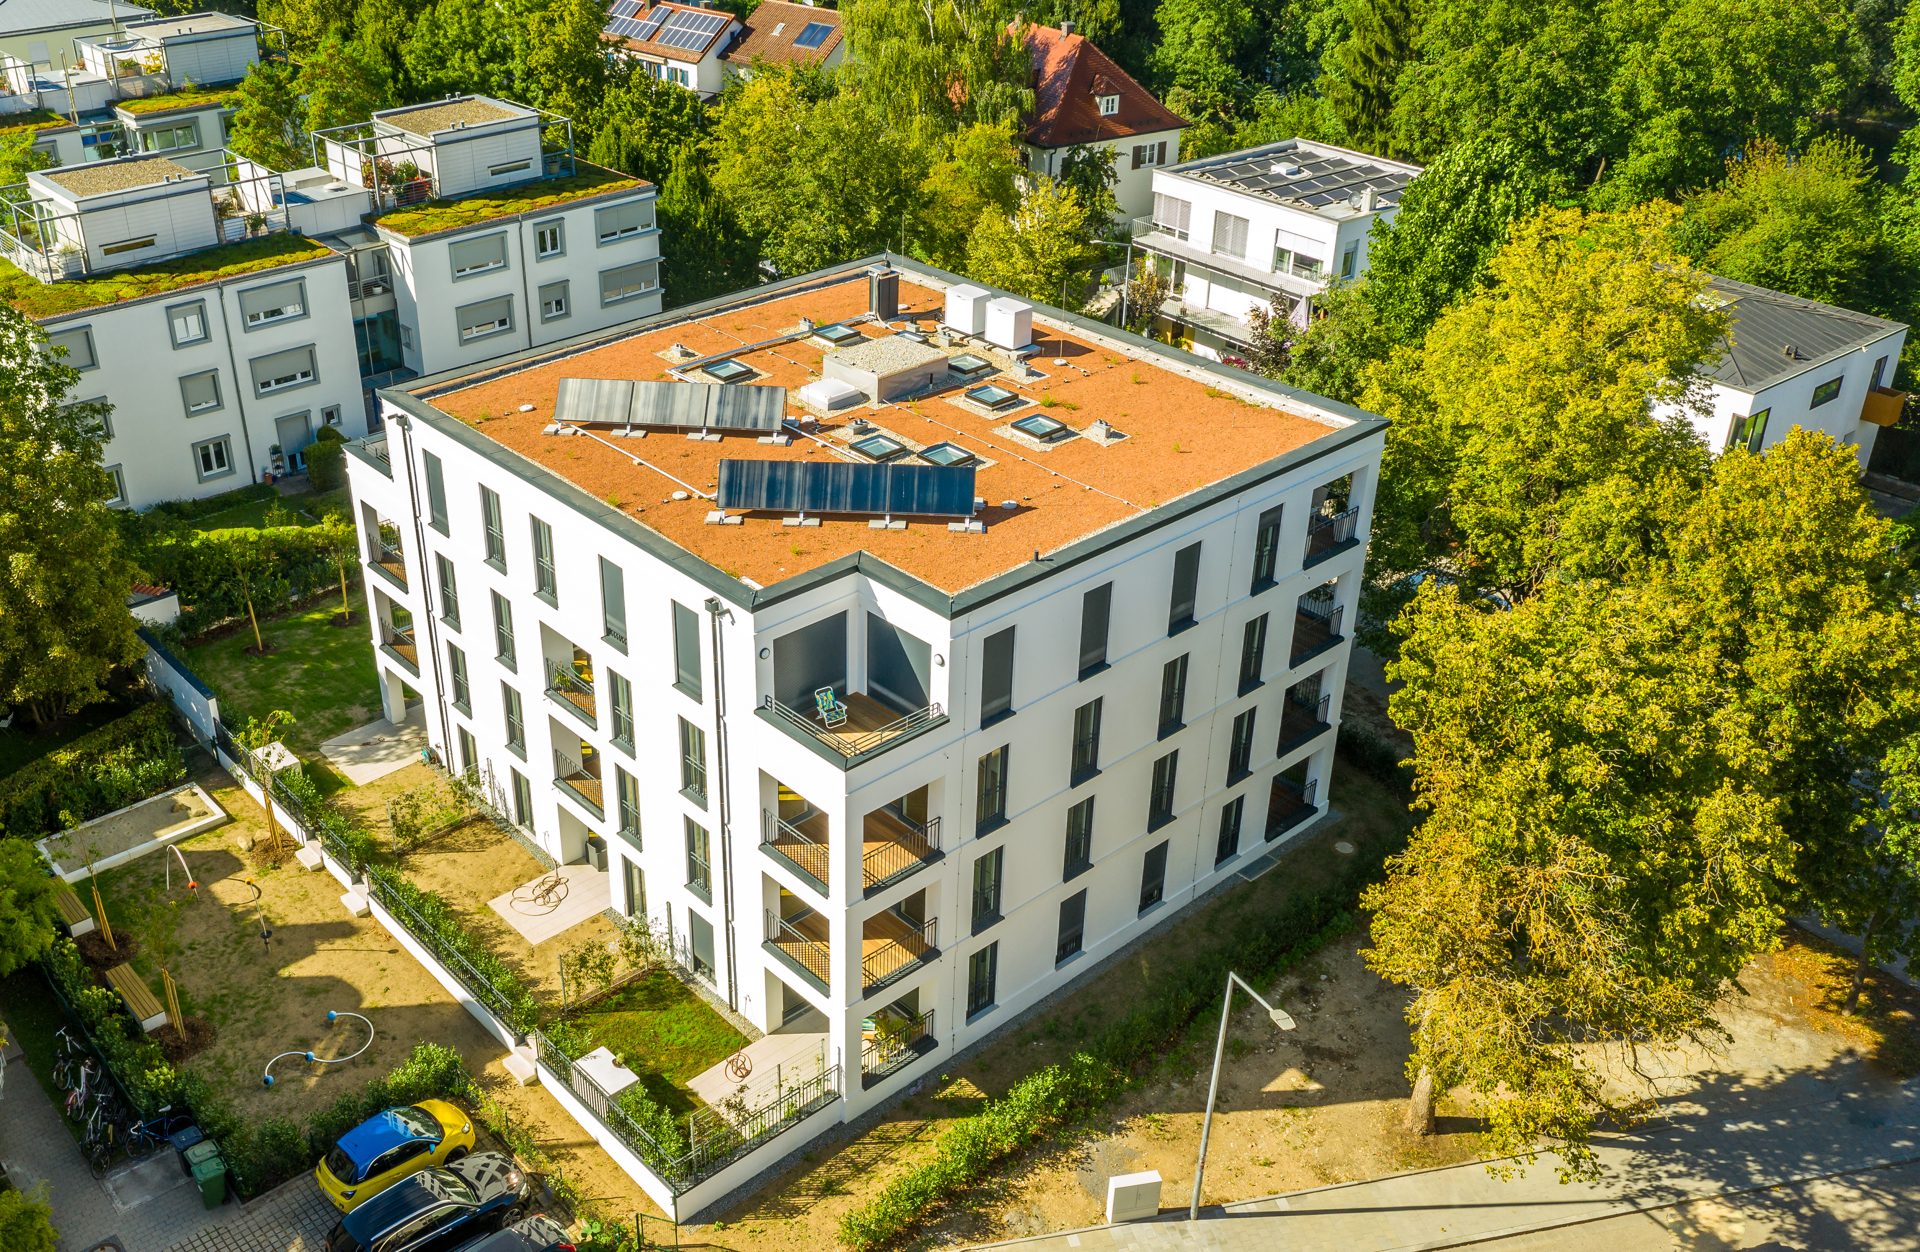 Immobilienangebot - Regensburg - Alle - Exklusive 2-Zimmer-Wohnung mit Loggia in Bestlage am Oberen Wöhrd! Frei ab 01.01.21!